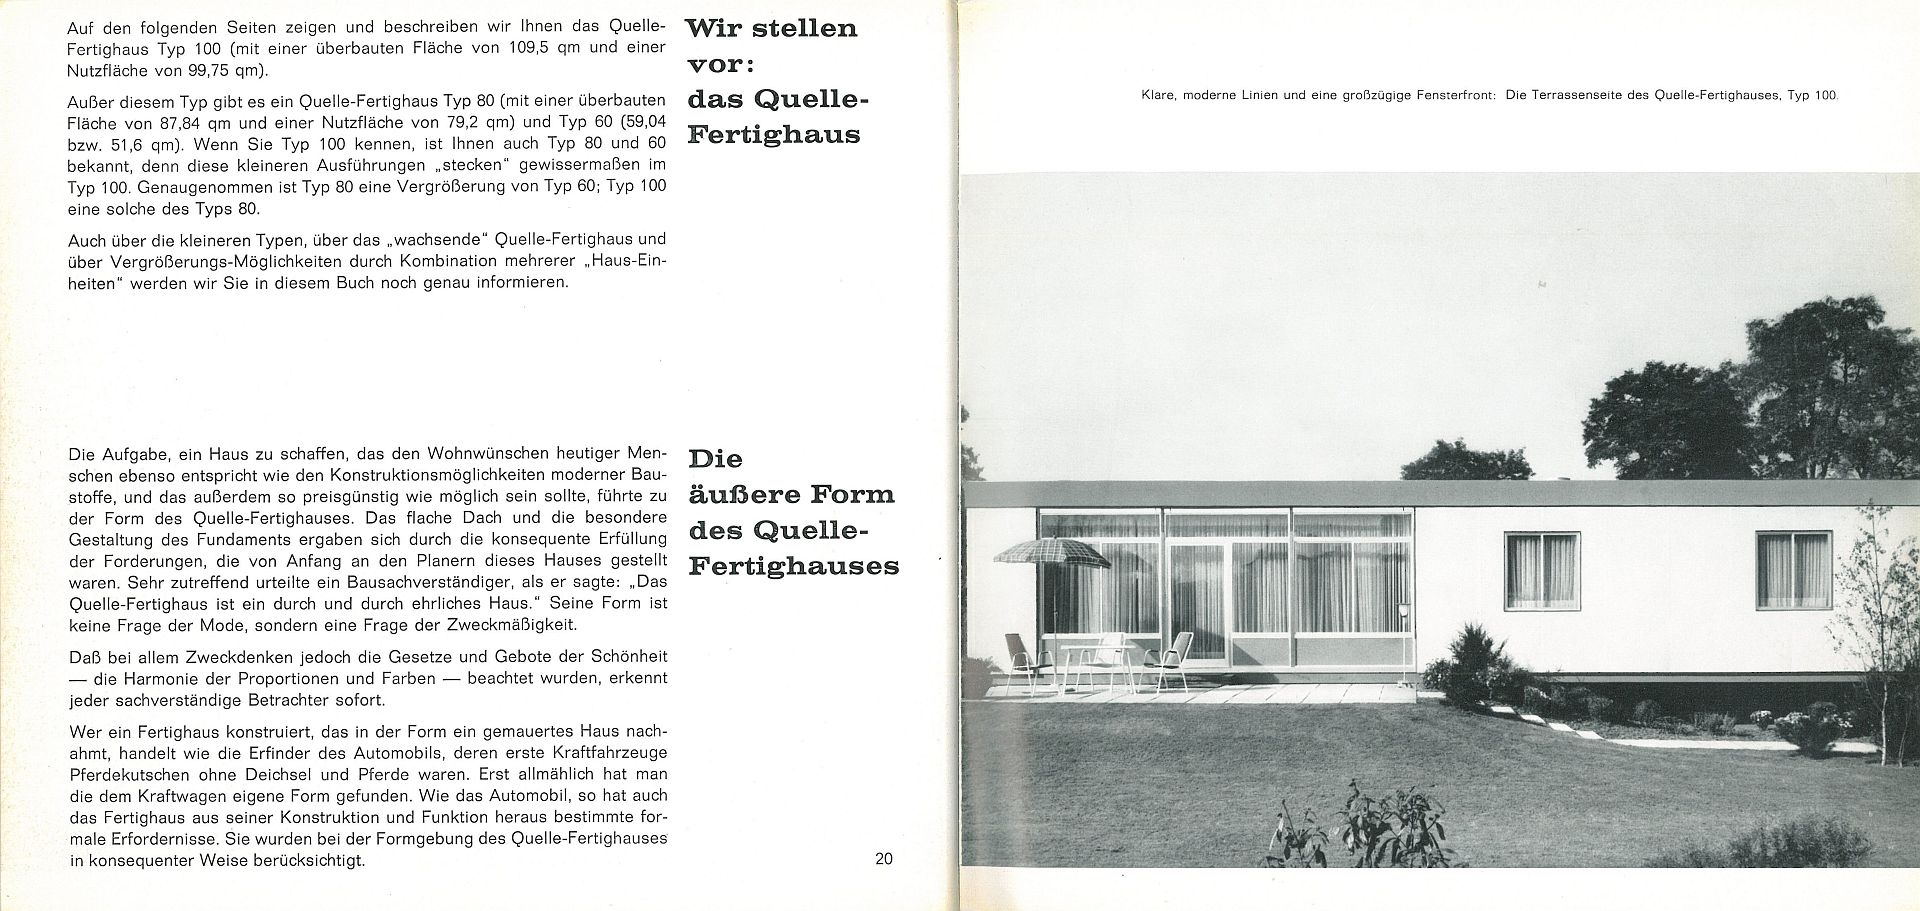 Quelle-Fertighaus-Fibel, 1962 (Scan: FLMK)